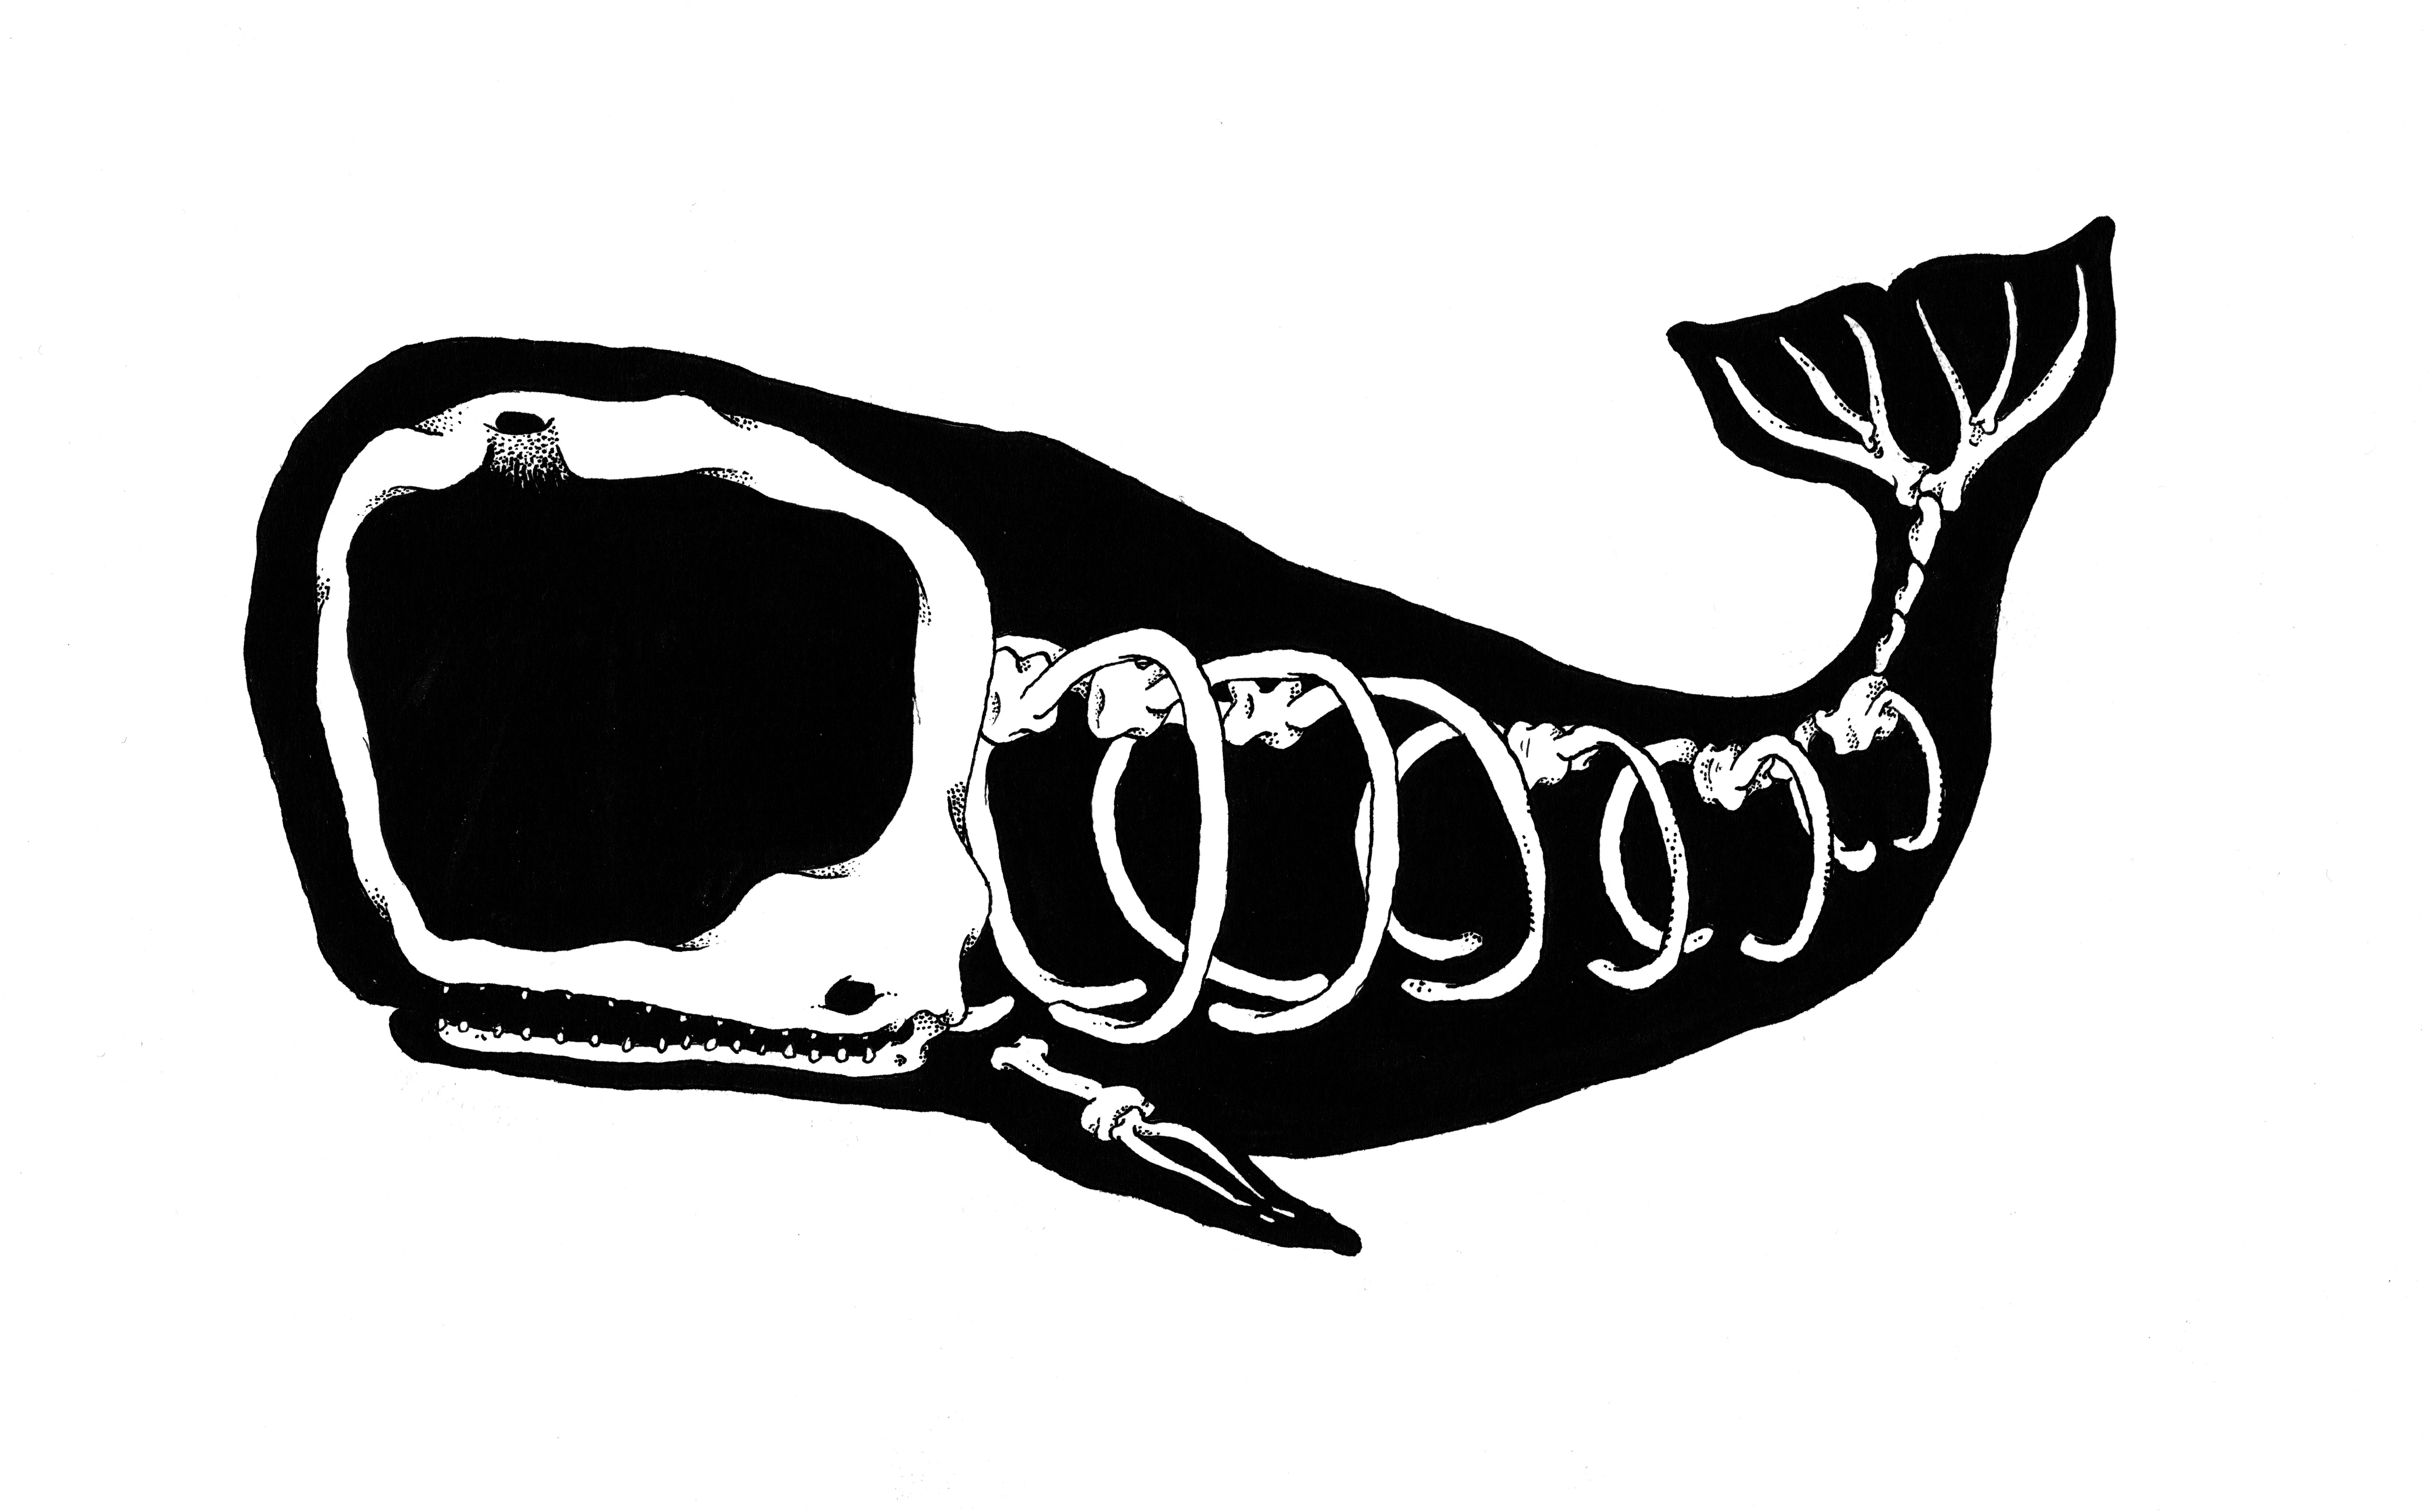 Whale screenprint